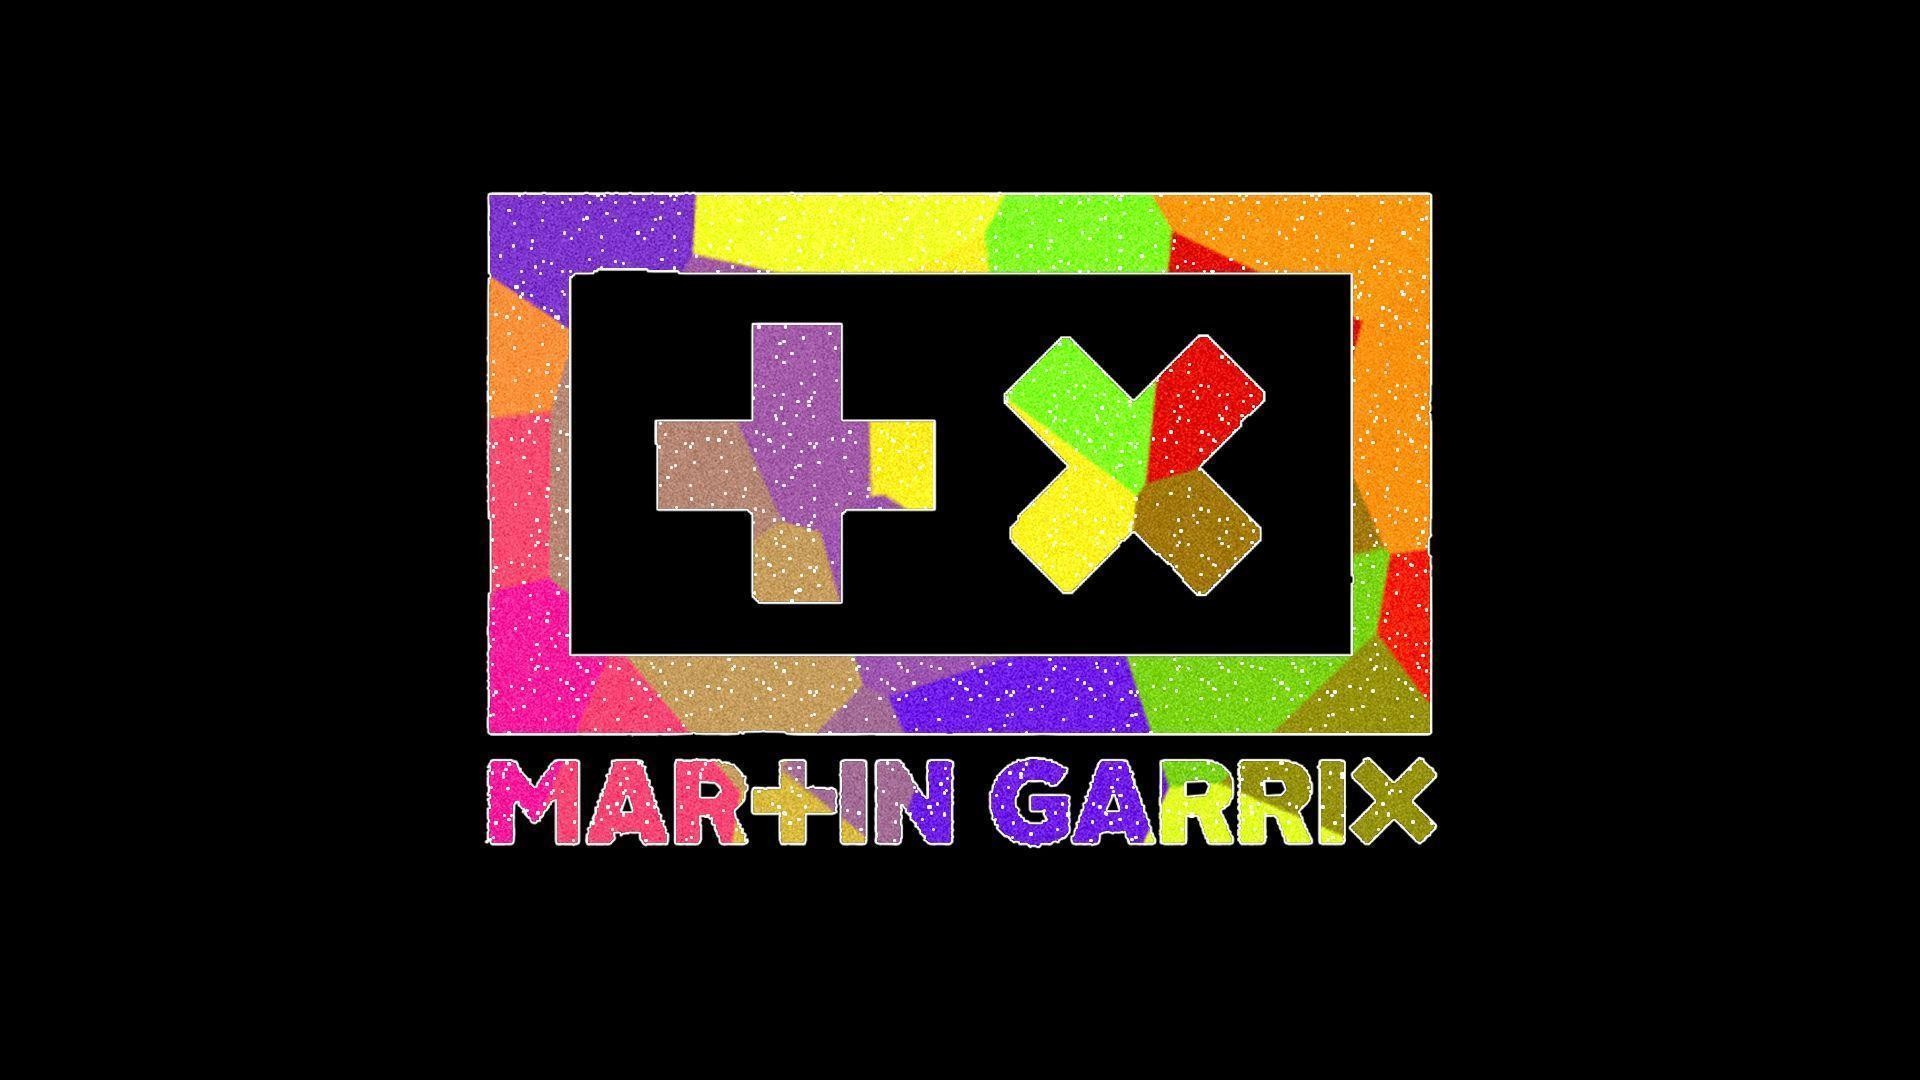 1920x1080 24 Martin Garrix HD Wallpapers | Backgrounds - Wallpaper Abyss